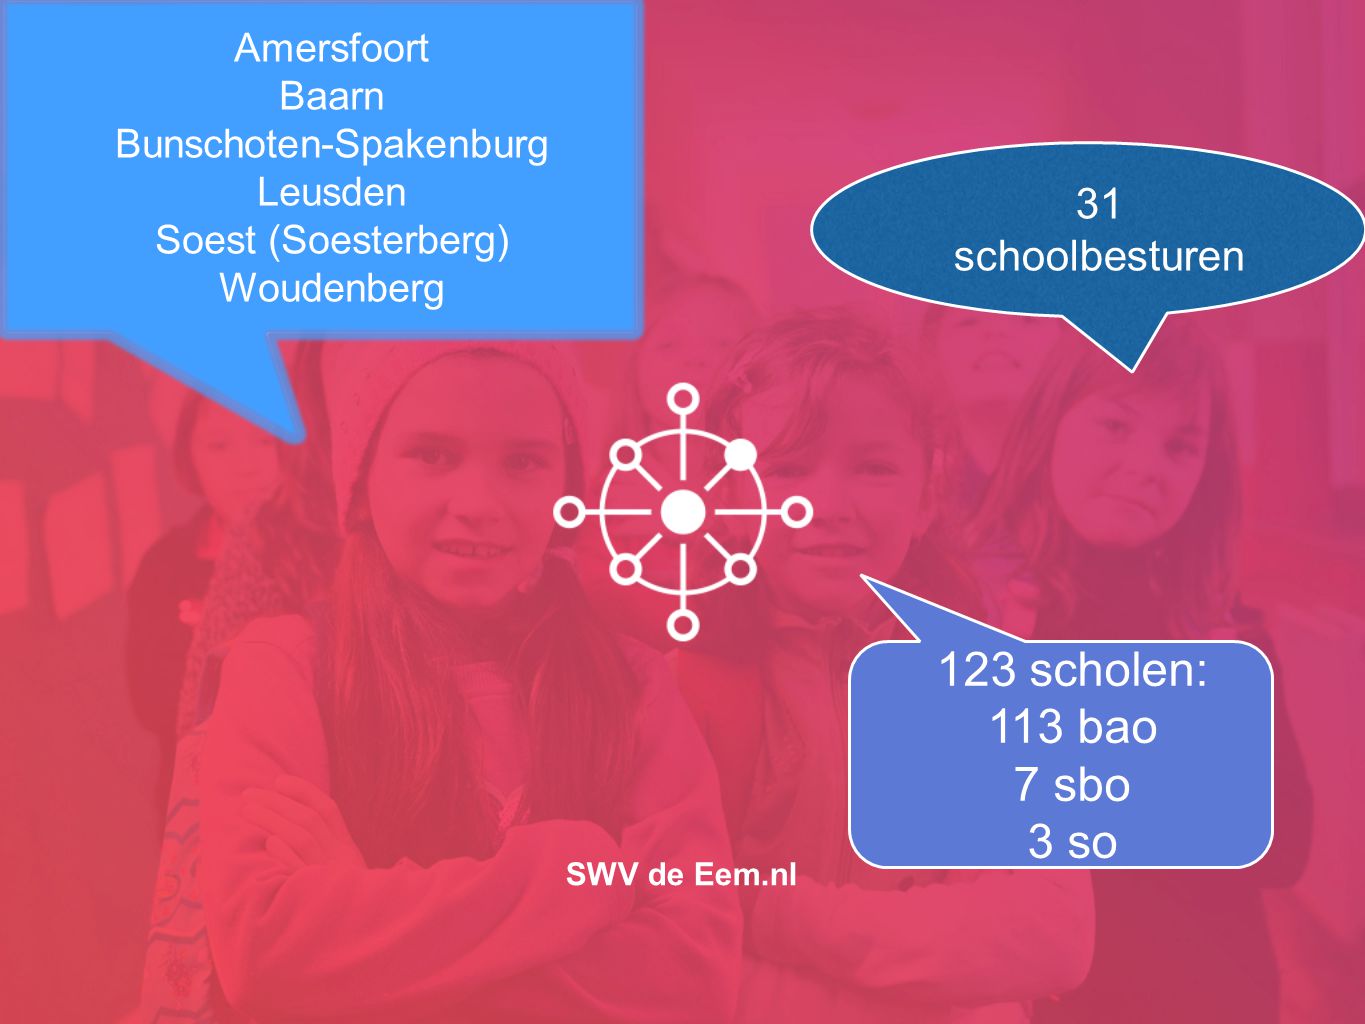 SWV de Eem.nl Amersfoort Baarn Bunschoten-Spakenburg Leusden Soest (Soesterberg) Woudenberg 31 schoolbesturen 123 scholen: 113 bao 7 sbo 3 so